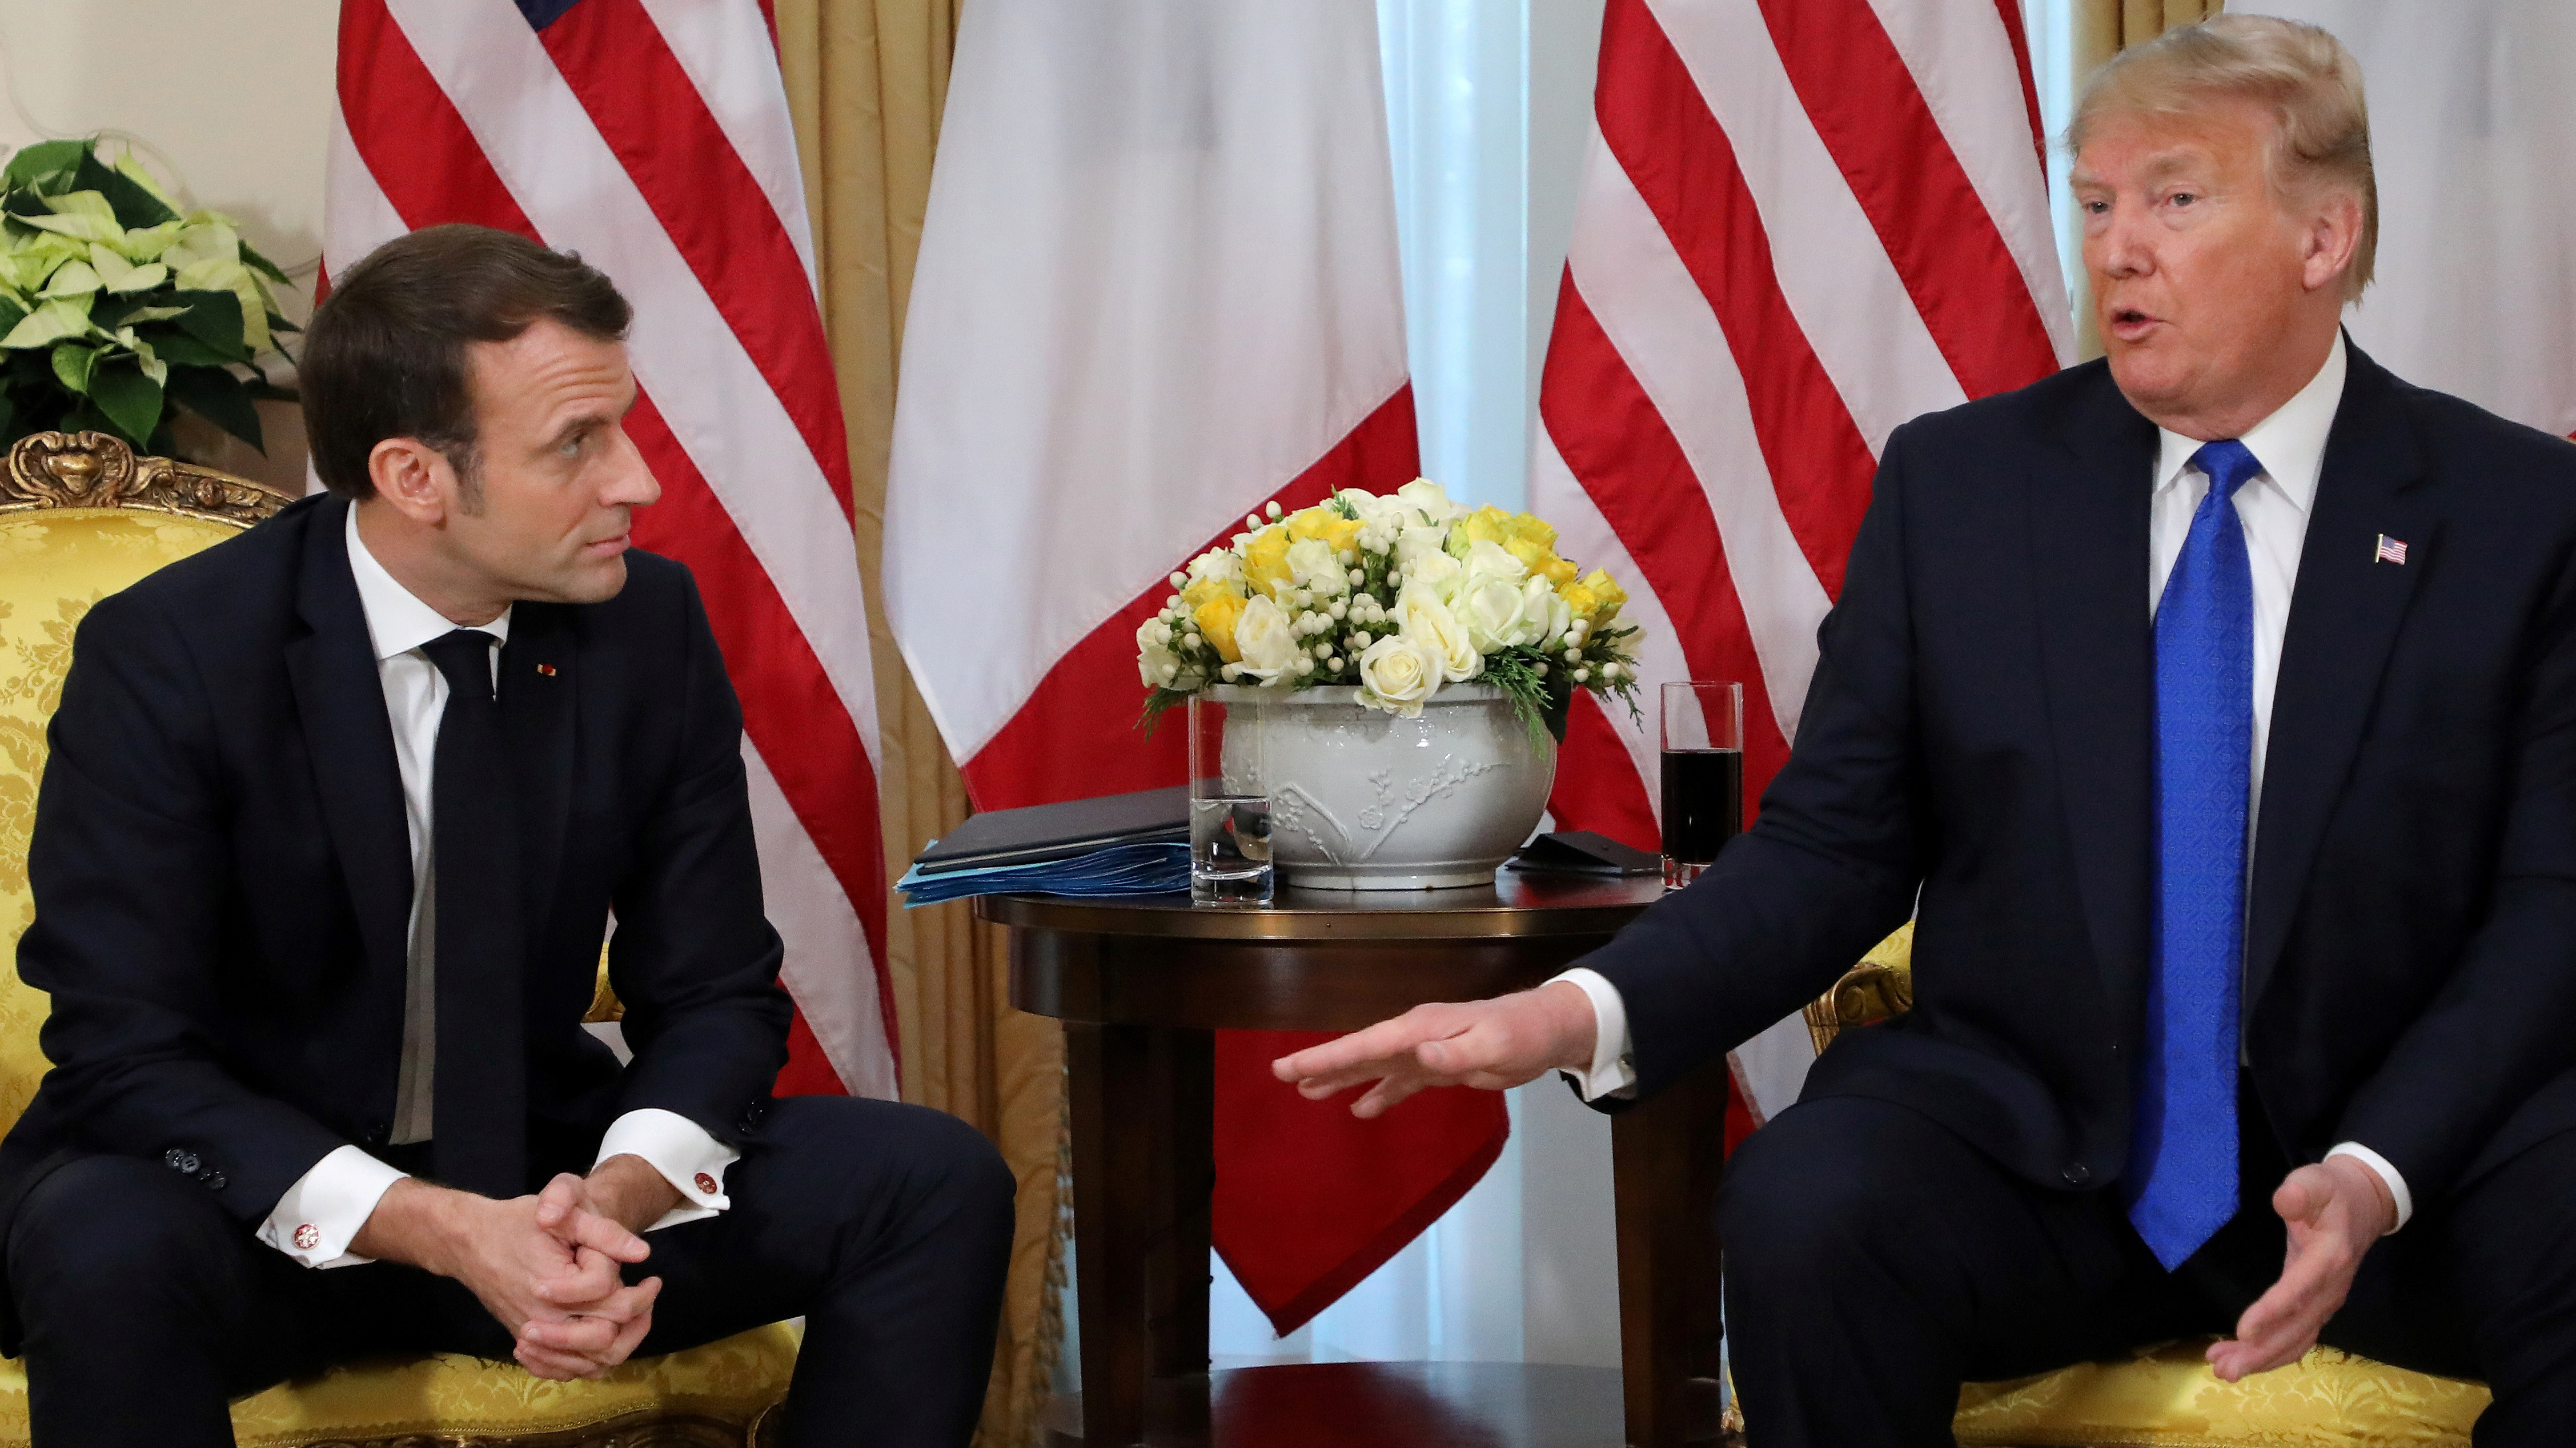 Macron visitó la Casa Blanca en 2019, durante el mandato de Donald Trump Ludovic Marin/Pool via REUTERS